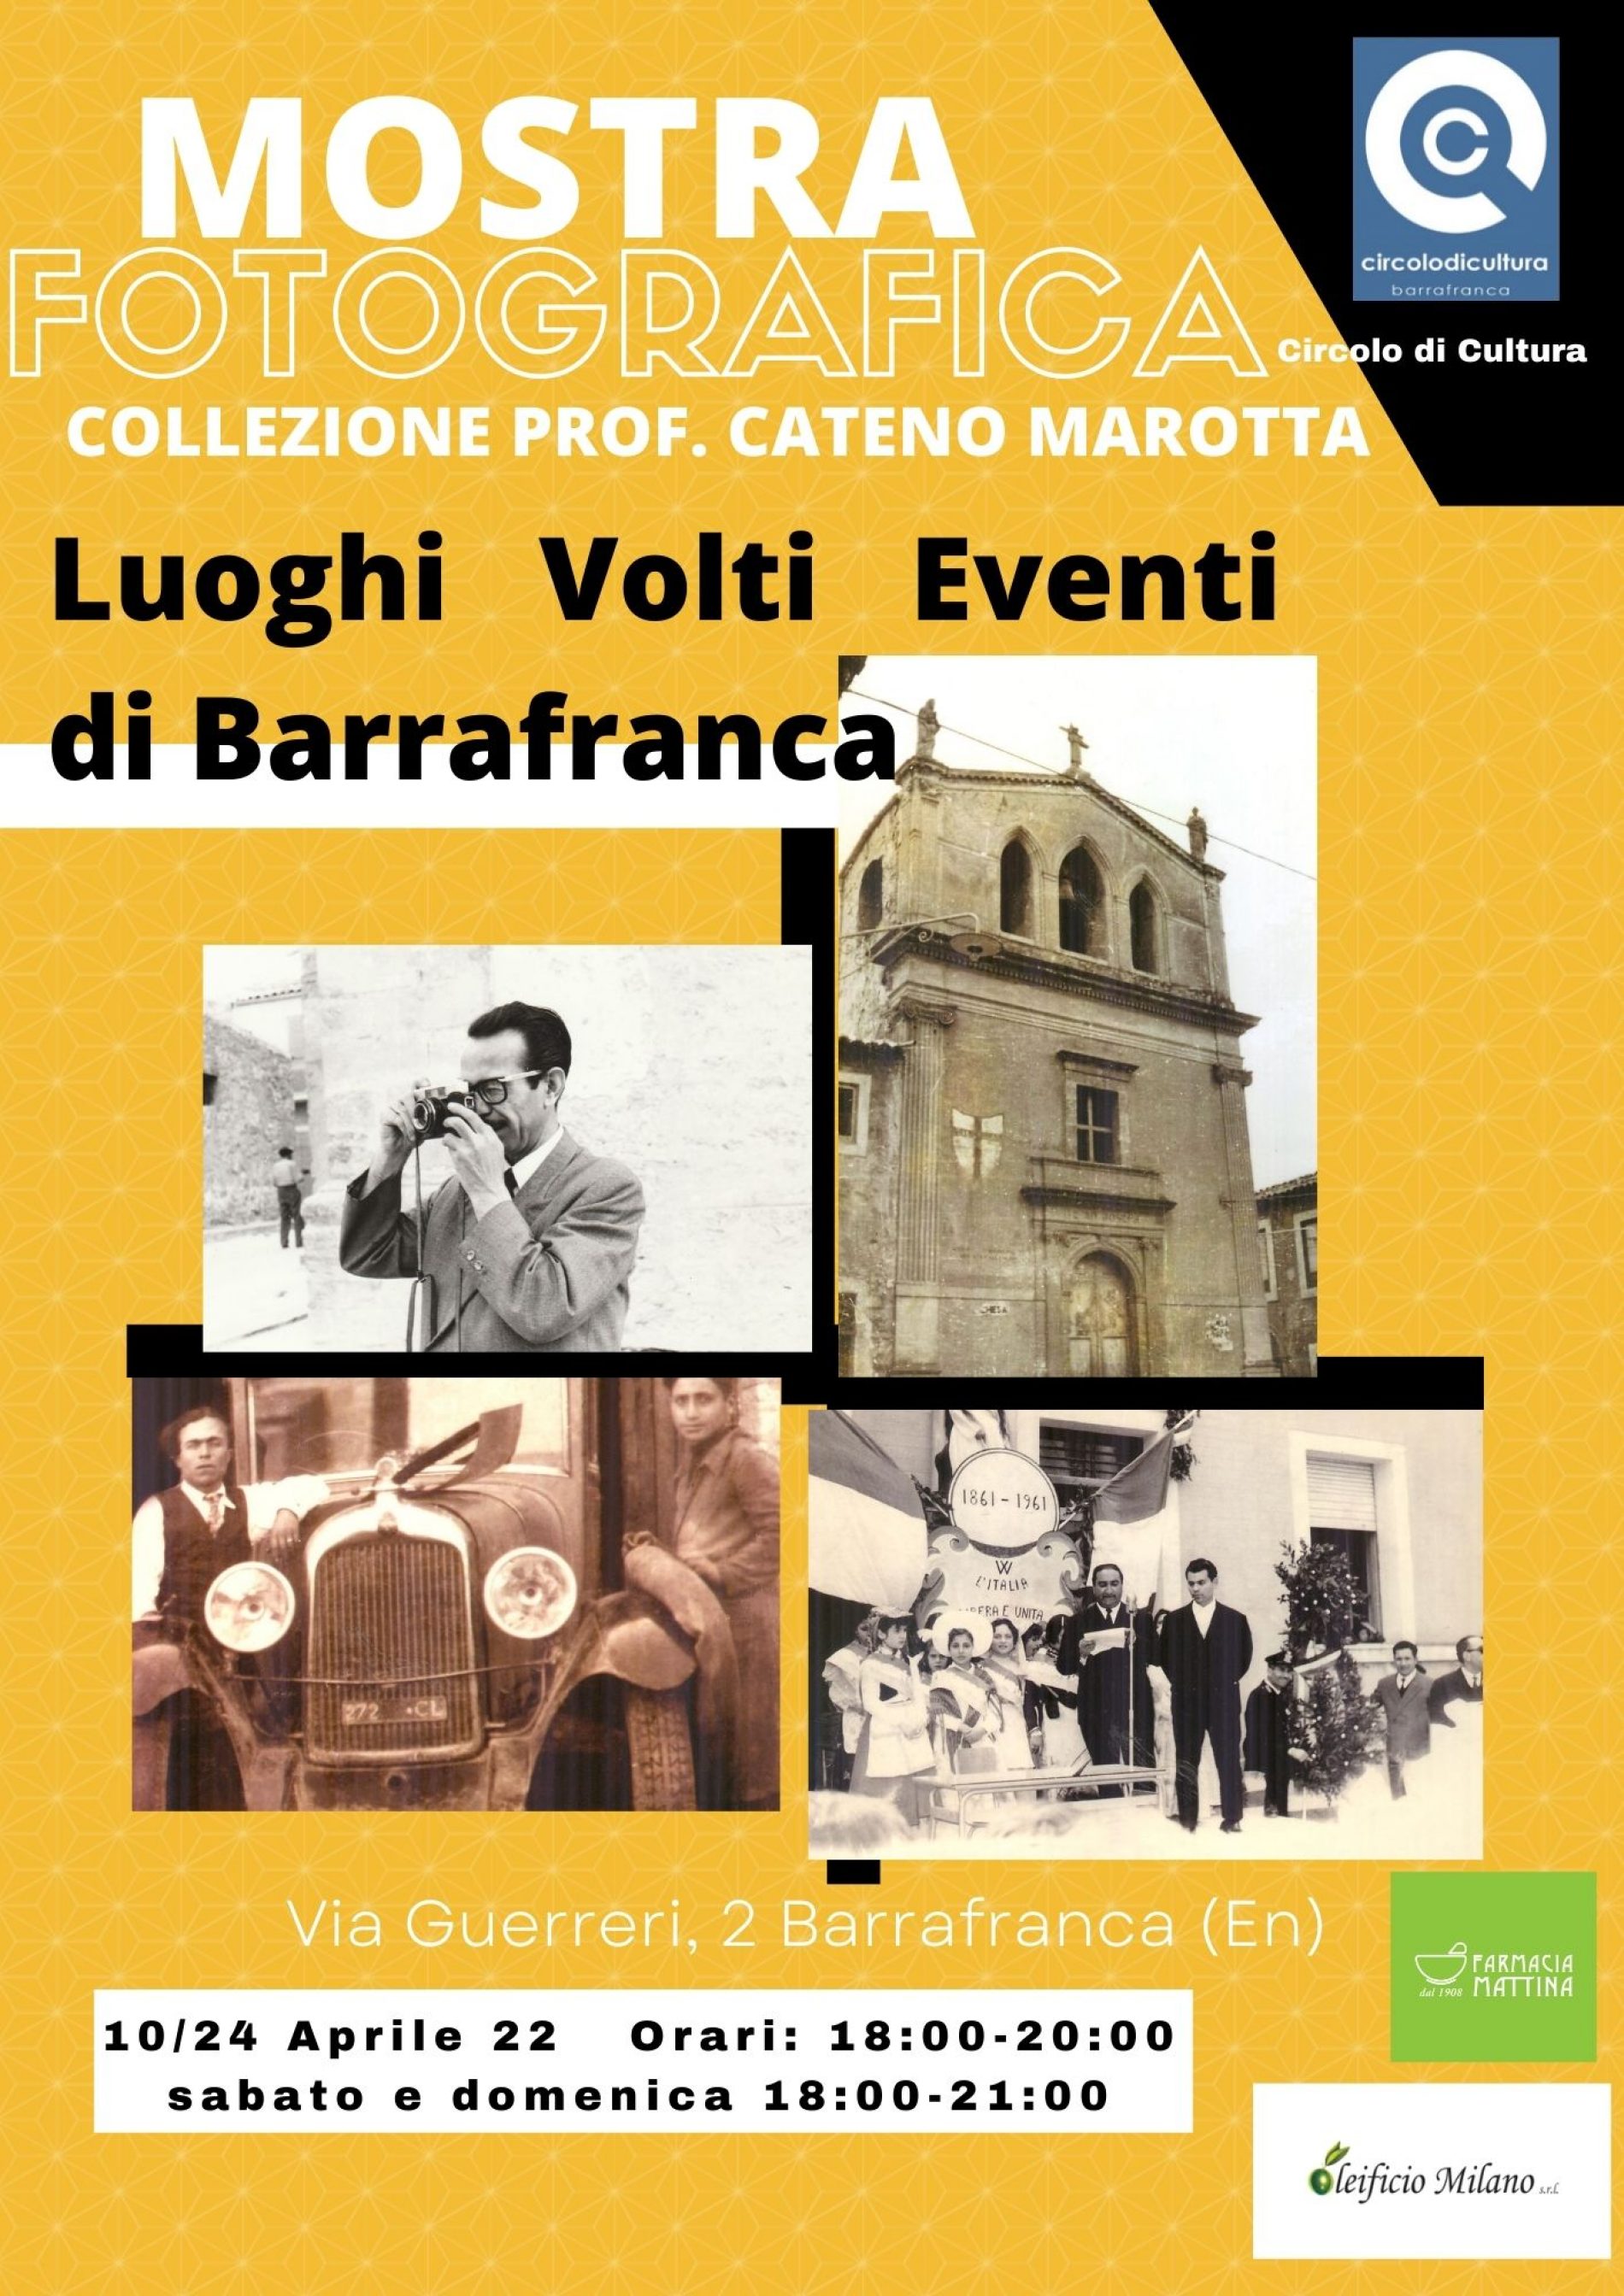 Barrafranca. Le foto del prof. Cateno Marotta in mostra dal 10 aprile.